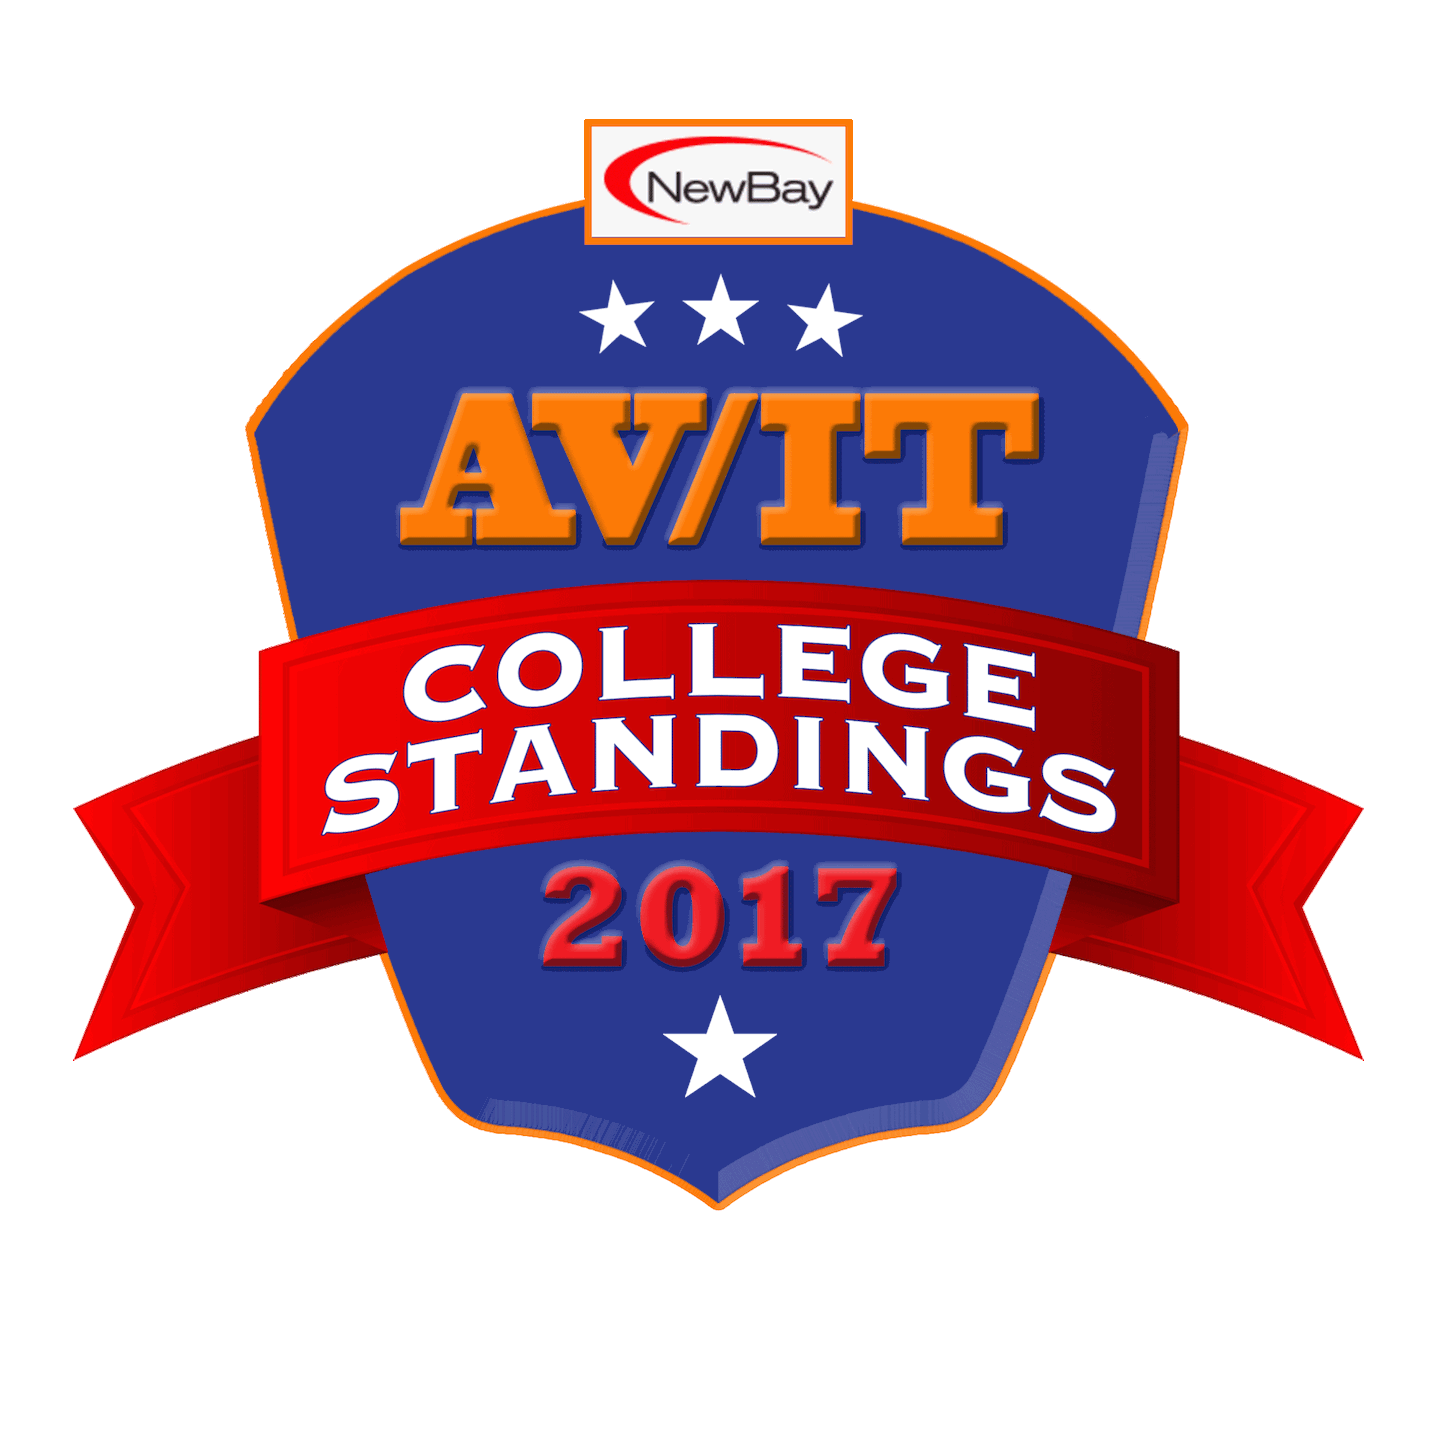 NewBay Media's 2017 AV/IT College Standings